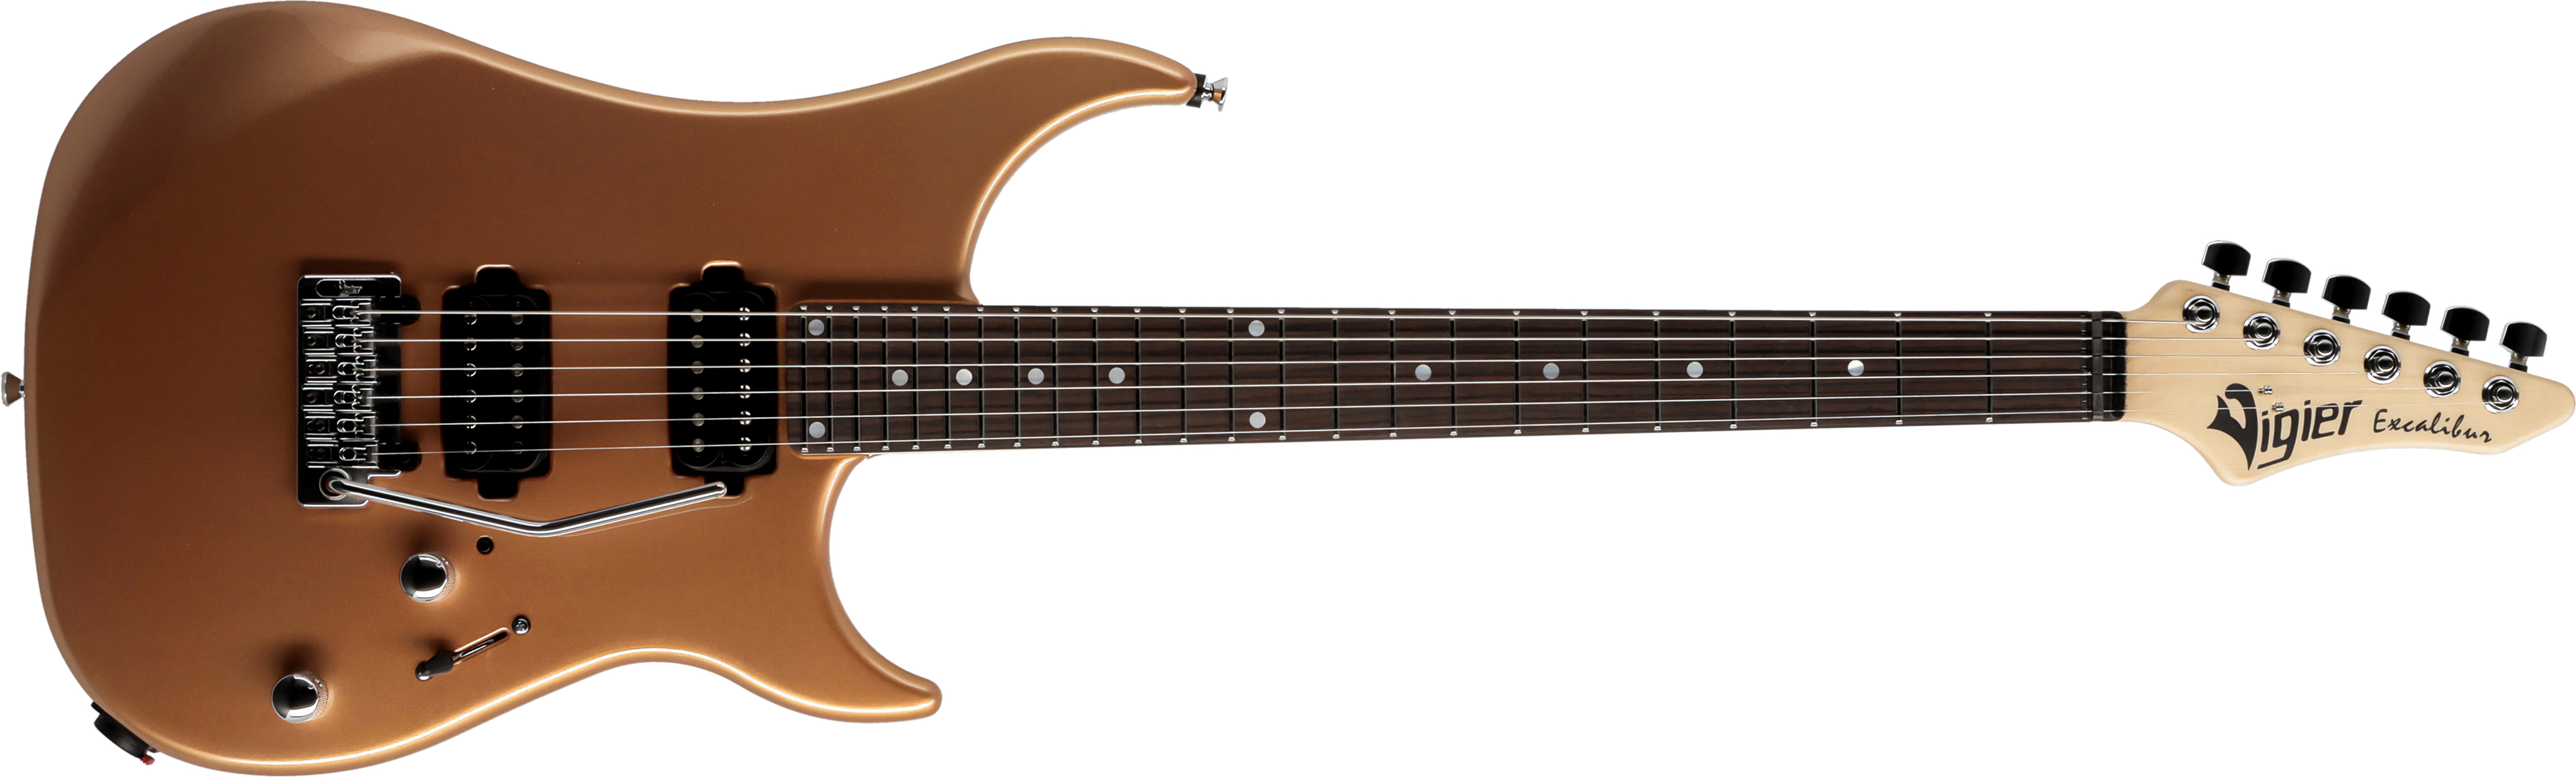 Vigier Excalibur Thirteen 2h Trem Rw - Monarchy Gold - Str shape electric guitar - Main picture